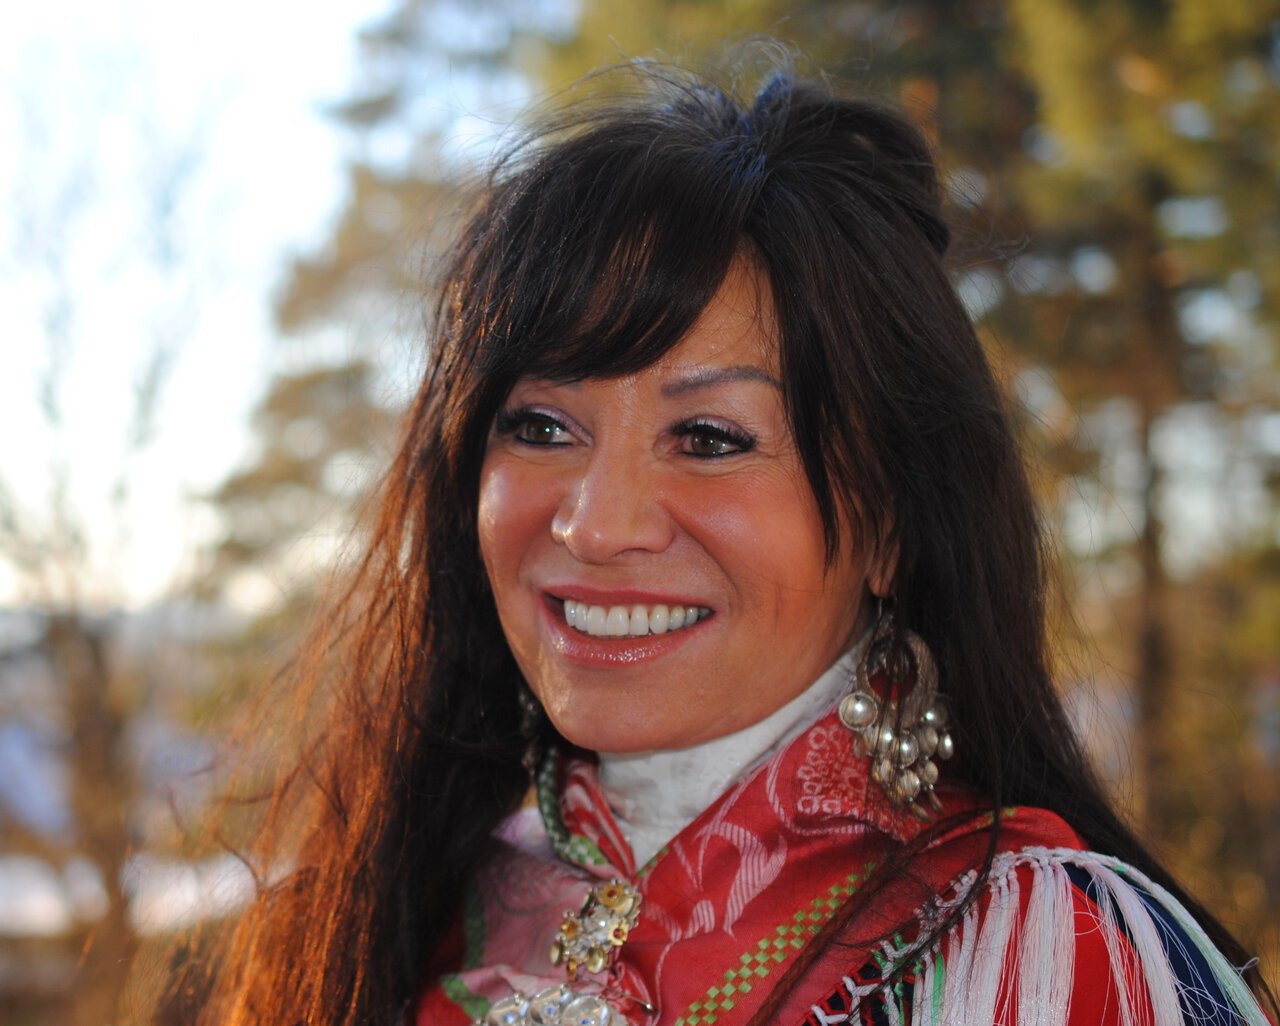 Máre Helander er samisklærer og kulturformidler på Oslo Samiske Skole og medlem av Fagforbundet Barn- og Oppvekst Oslo.